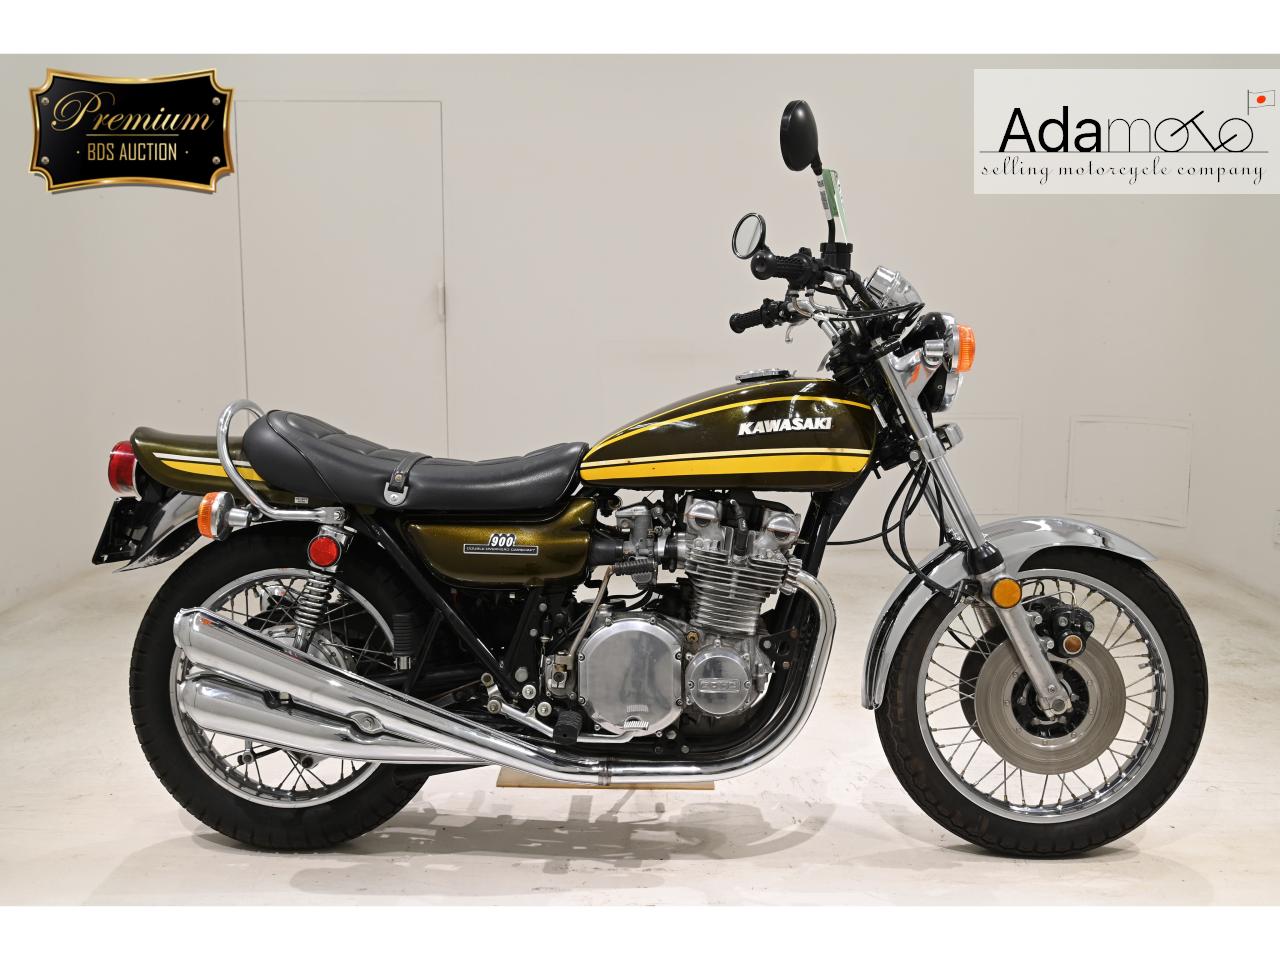 Kawasaki Z1 - Adamoto - Motorcycles from Japan